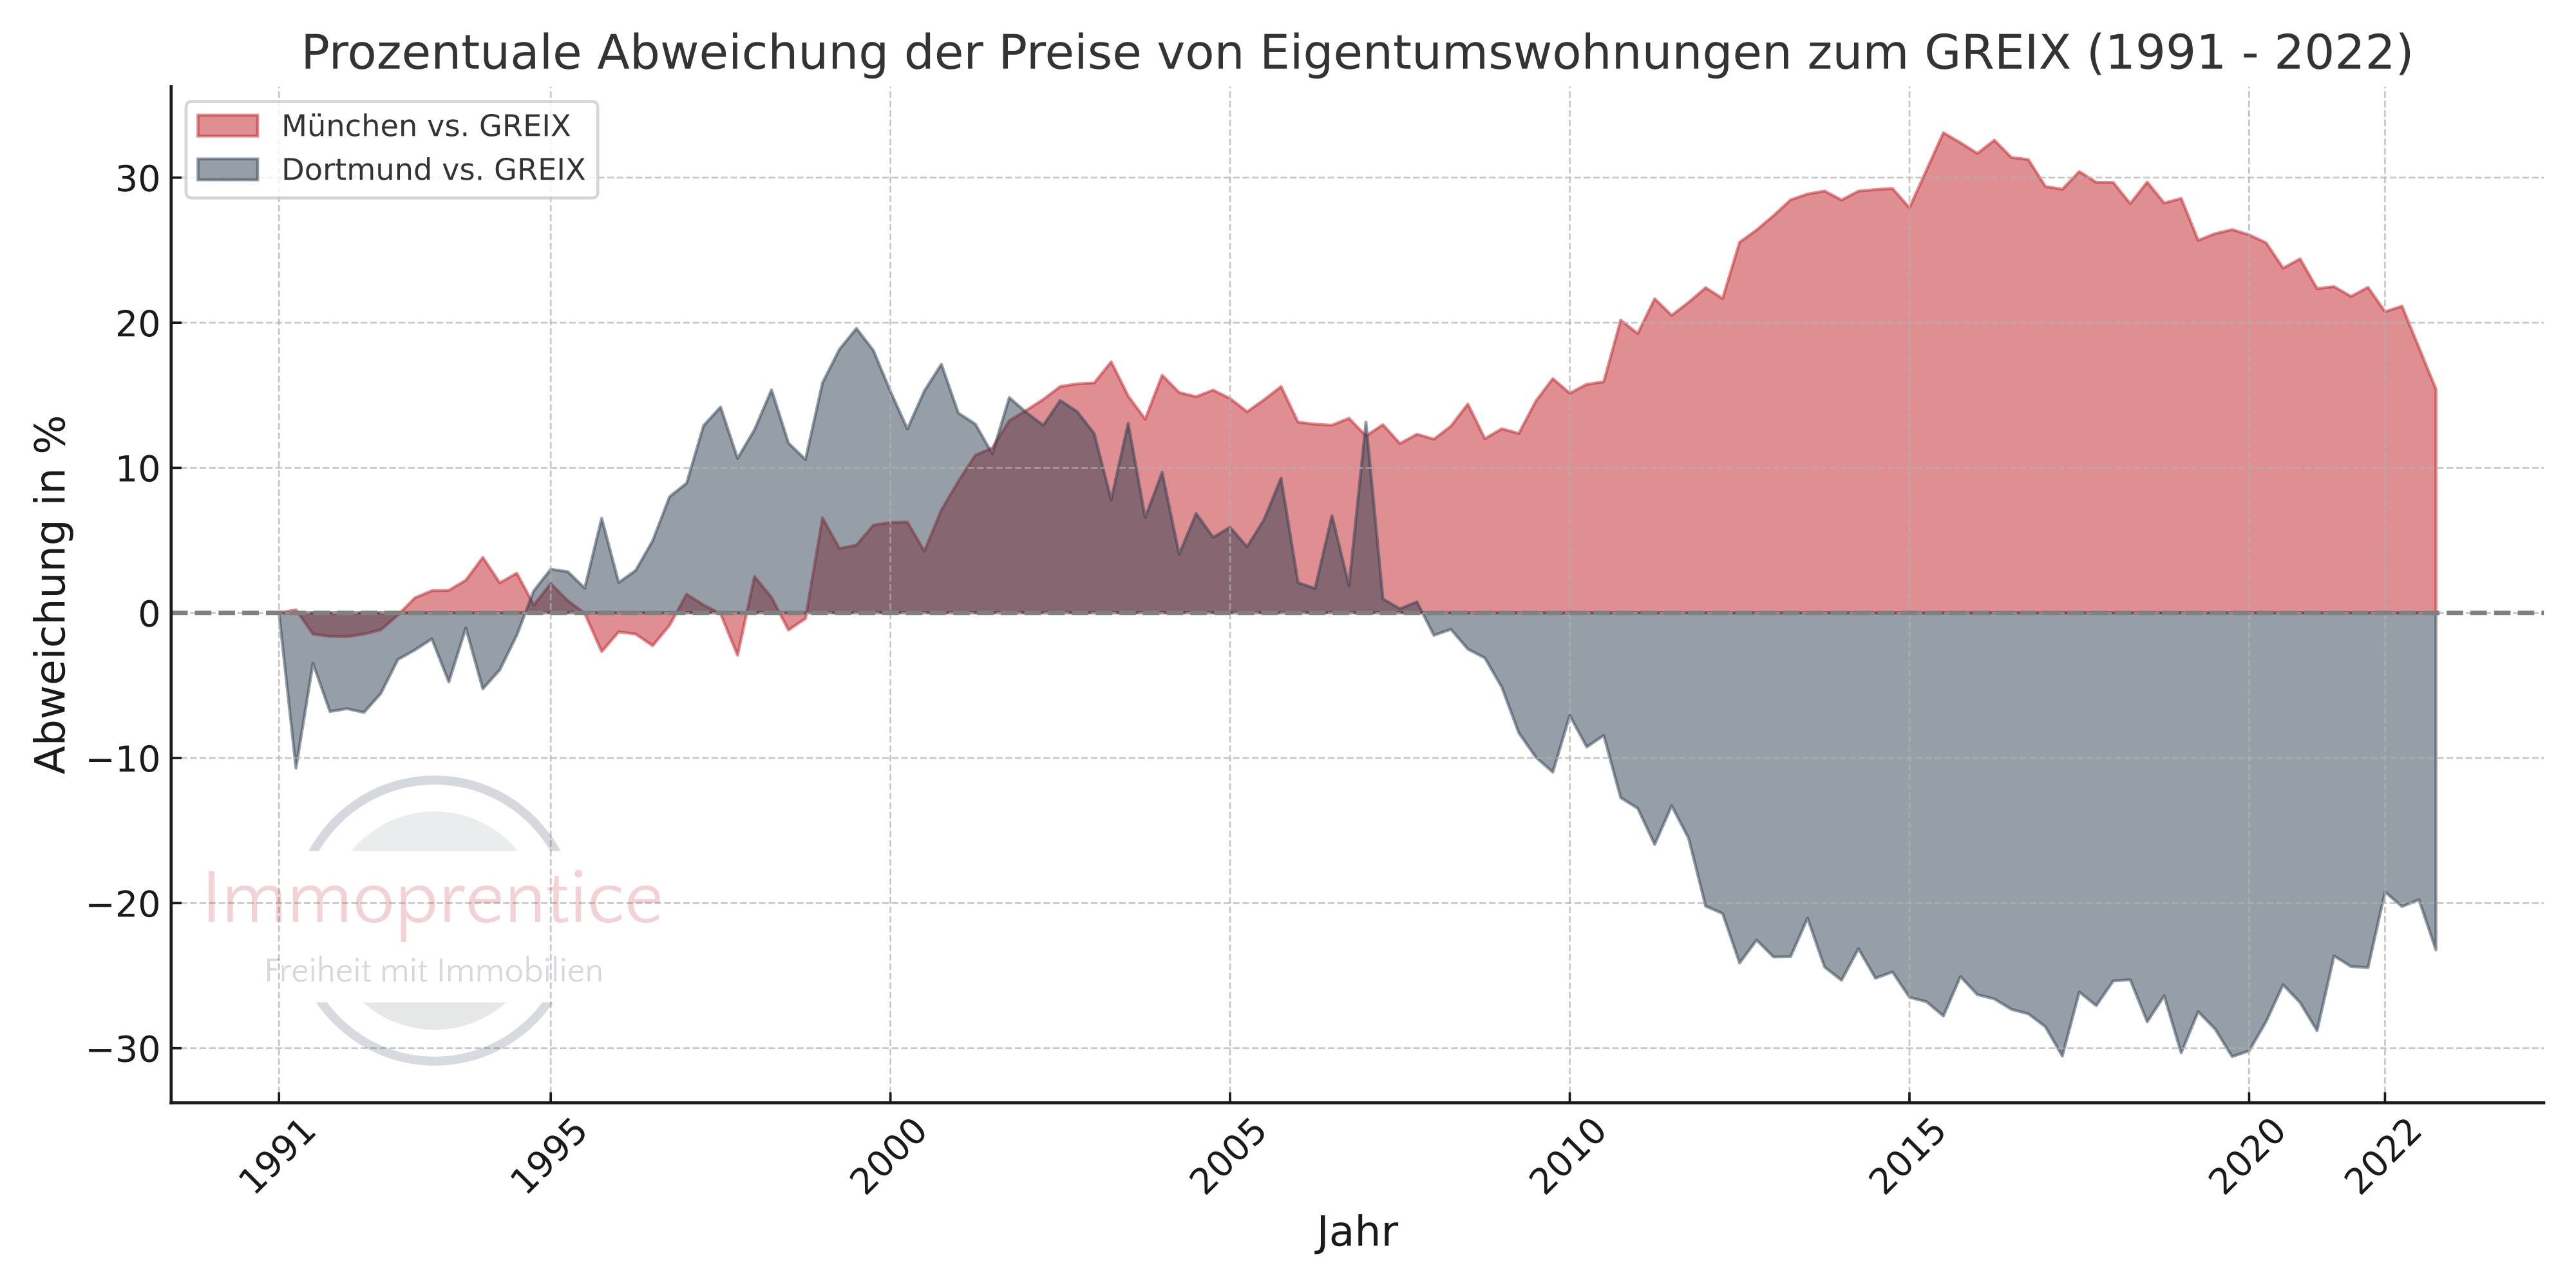 Vergleich der Immobilienpreisentwicklung zwischen München, Dortmund und dem Deutschen Immobilienmarkt als Flächendiagramm. Die Nulllinie ist der allgemeine Deutsche Immobilienmarkt. Während die Preise in Dortmund von 1995 bis 2003 noch stärker stiegen als in München, hat sich die Situation, insbesondere ab 2009, massiv gewandelt. Ab hier entwickeln sich die Preise in Dortmund sogar schlechter als der GREIX.